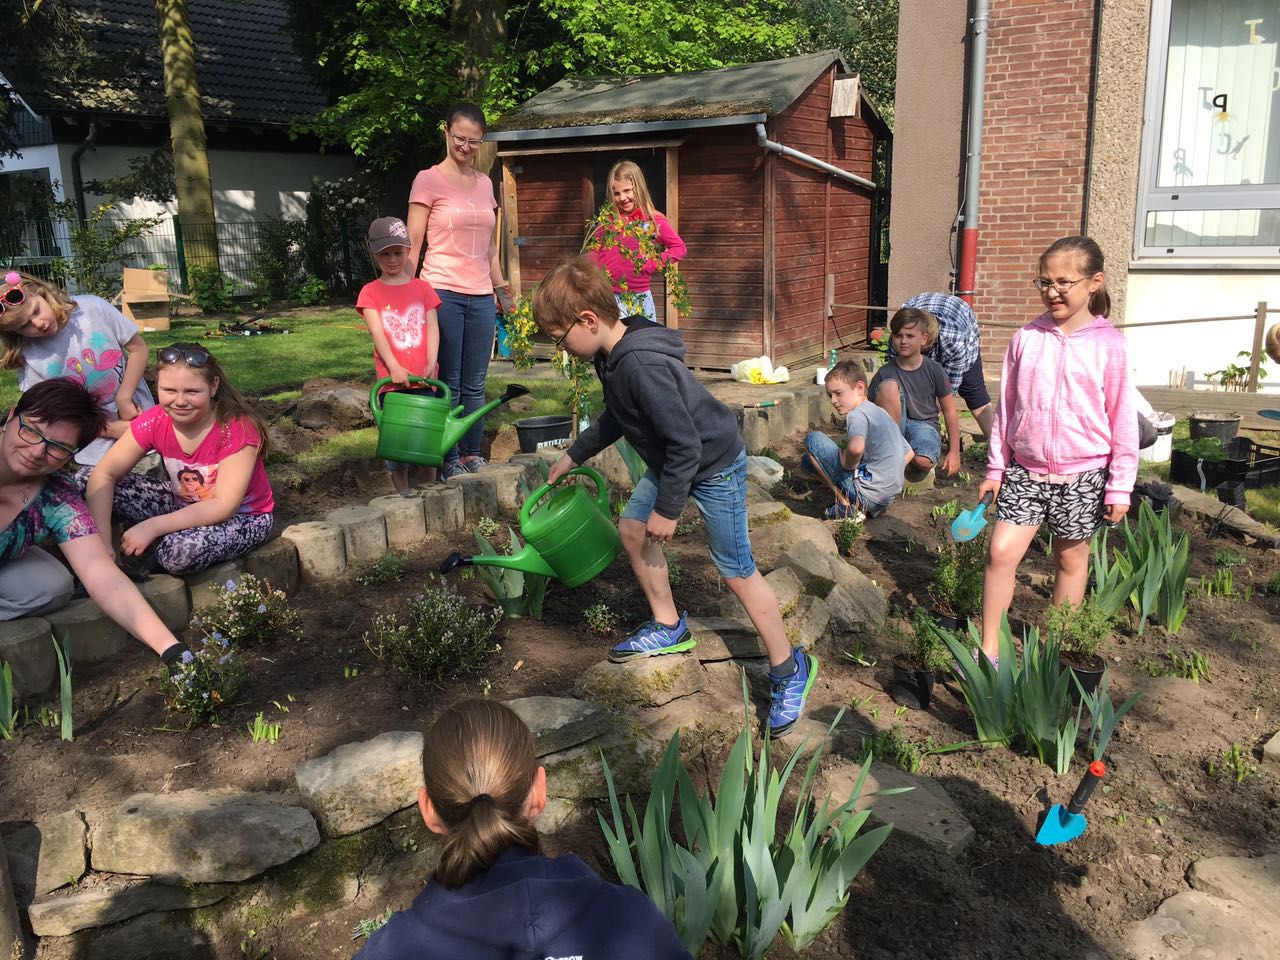 Kinder, Eltern und Pädagogen der Dudenrothschule gestalteten am Samstagvormittag den Schulgarten um und bewerben sich mit dem Projekt für einen Naturschutzpreis. (Foto: privat)